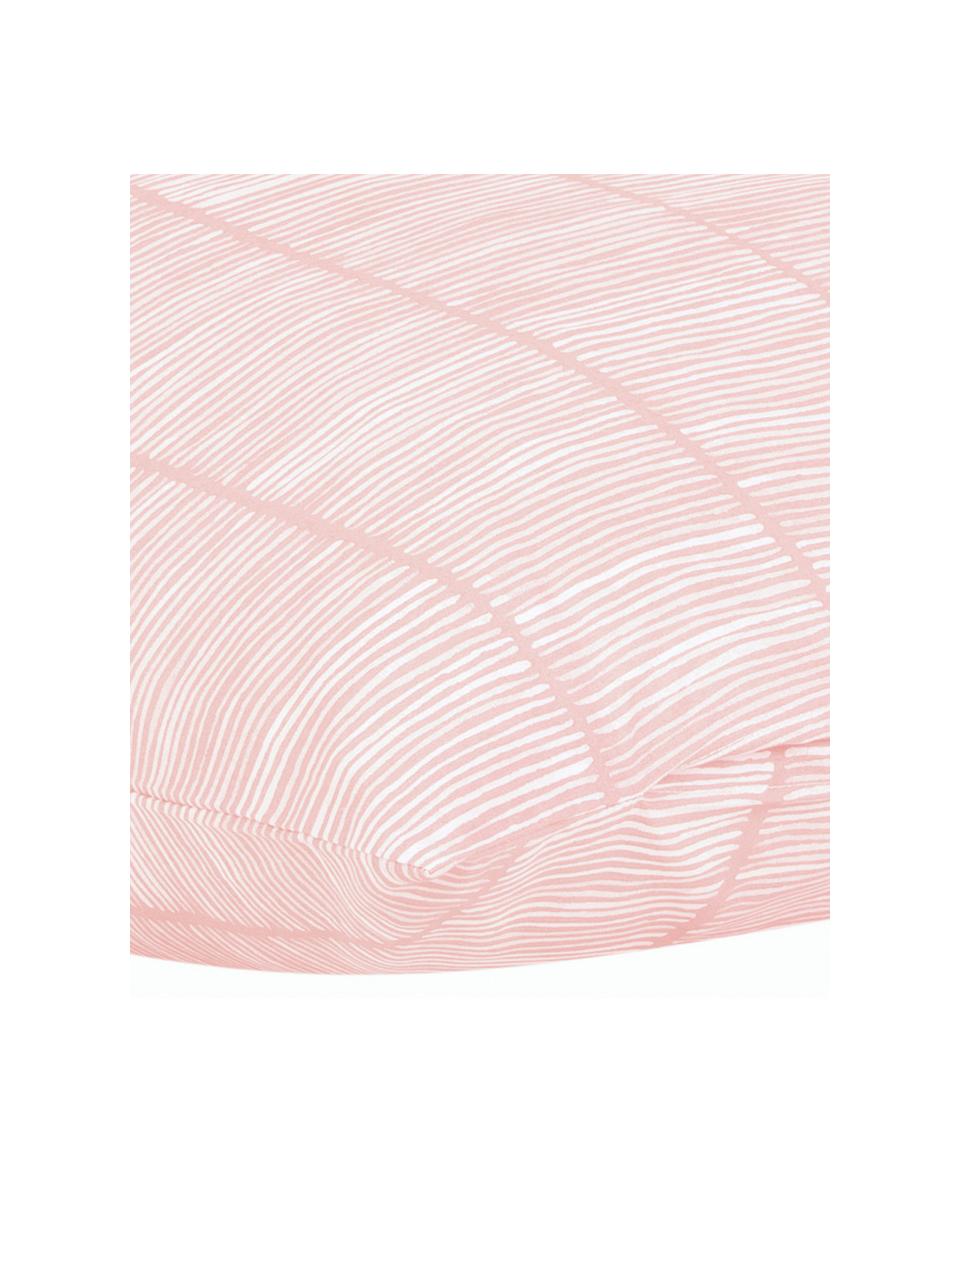 Poszewka na poduszkę z bawełny renforcé Paulina, 2 szt., Blady różowy, biały, S 40 x D 80 cm